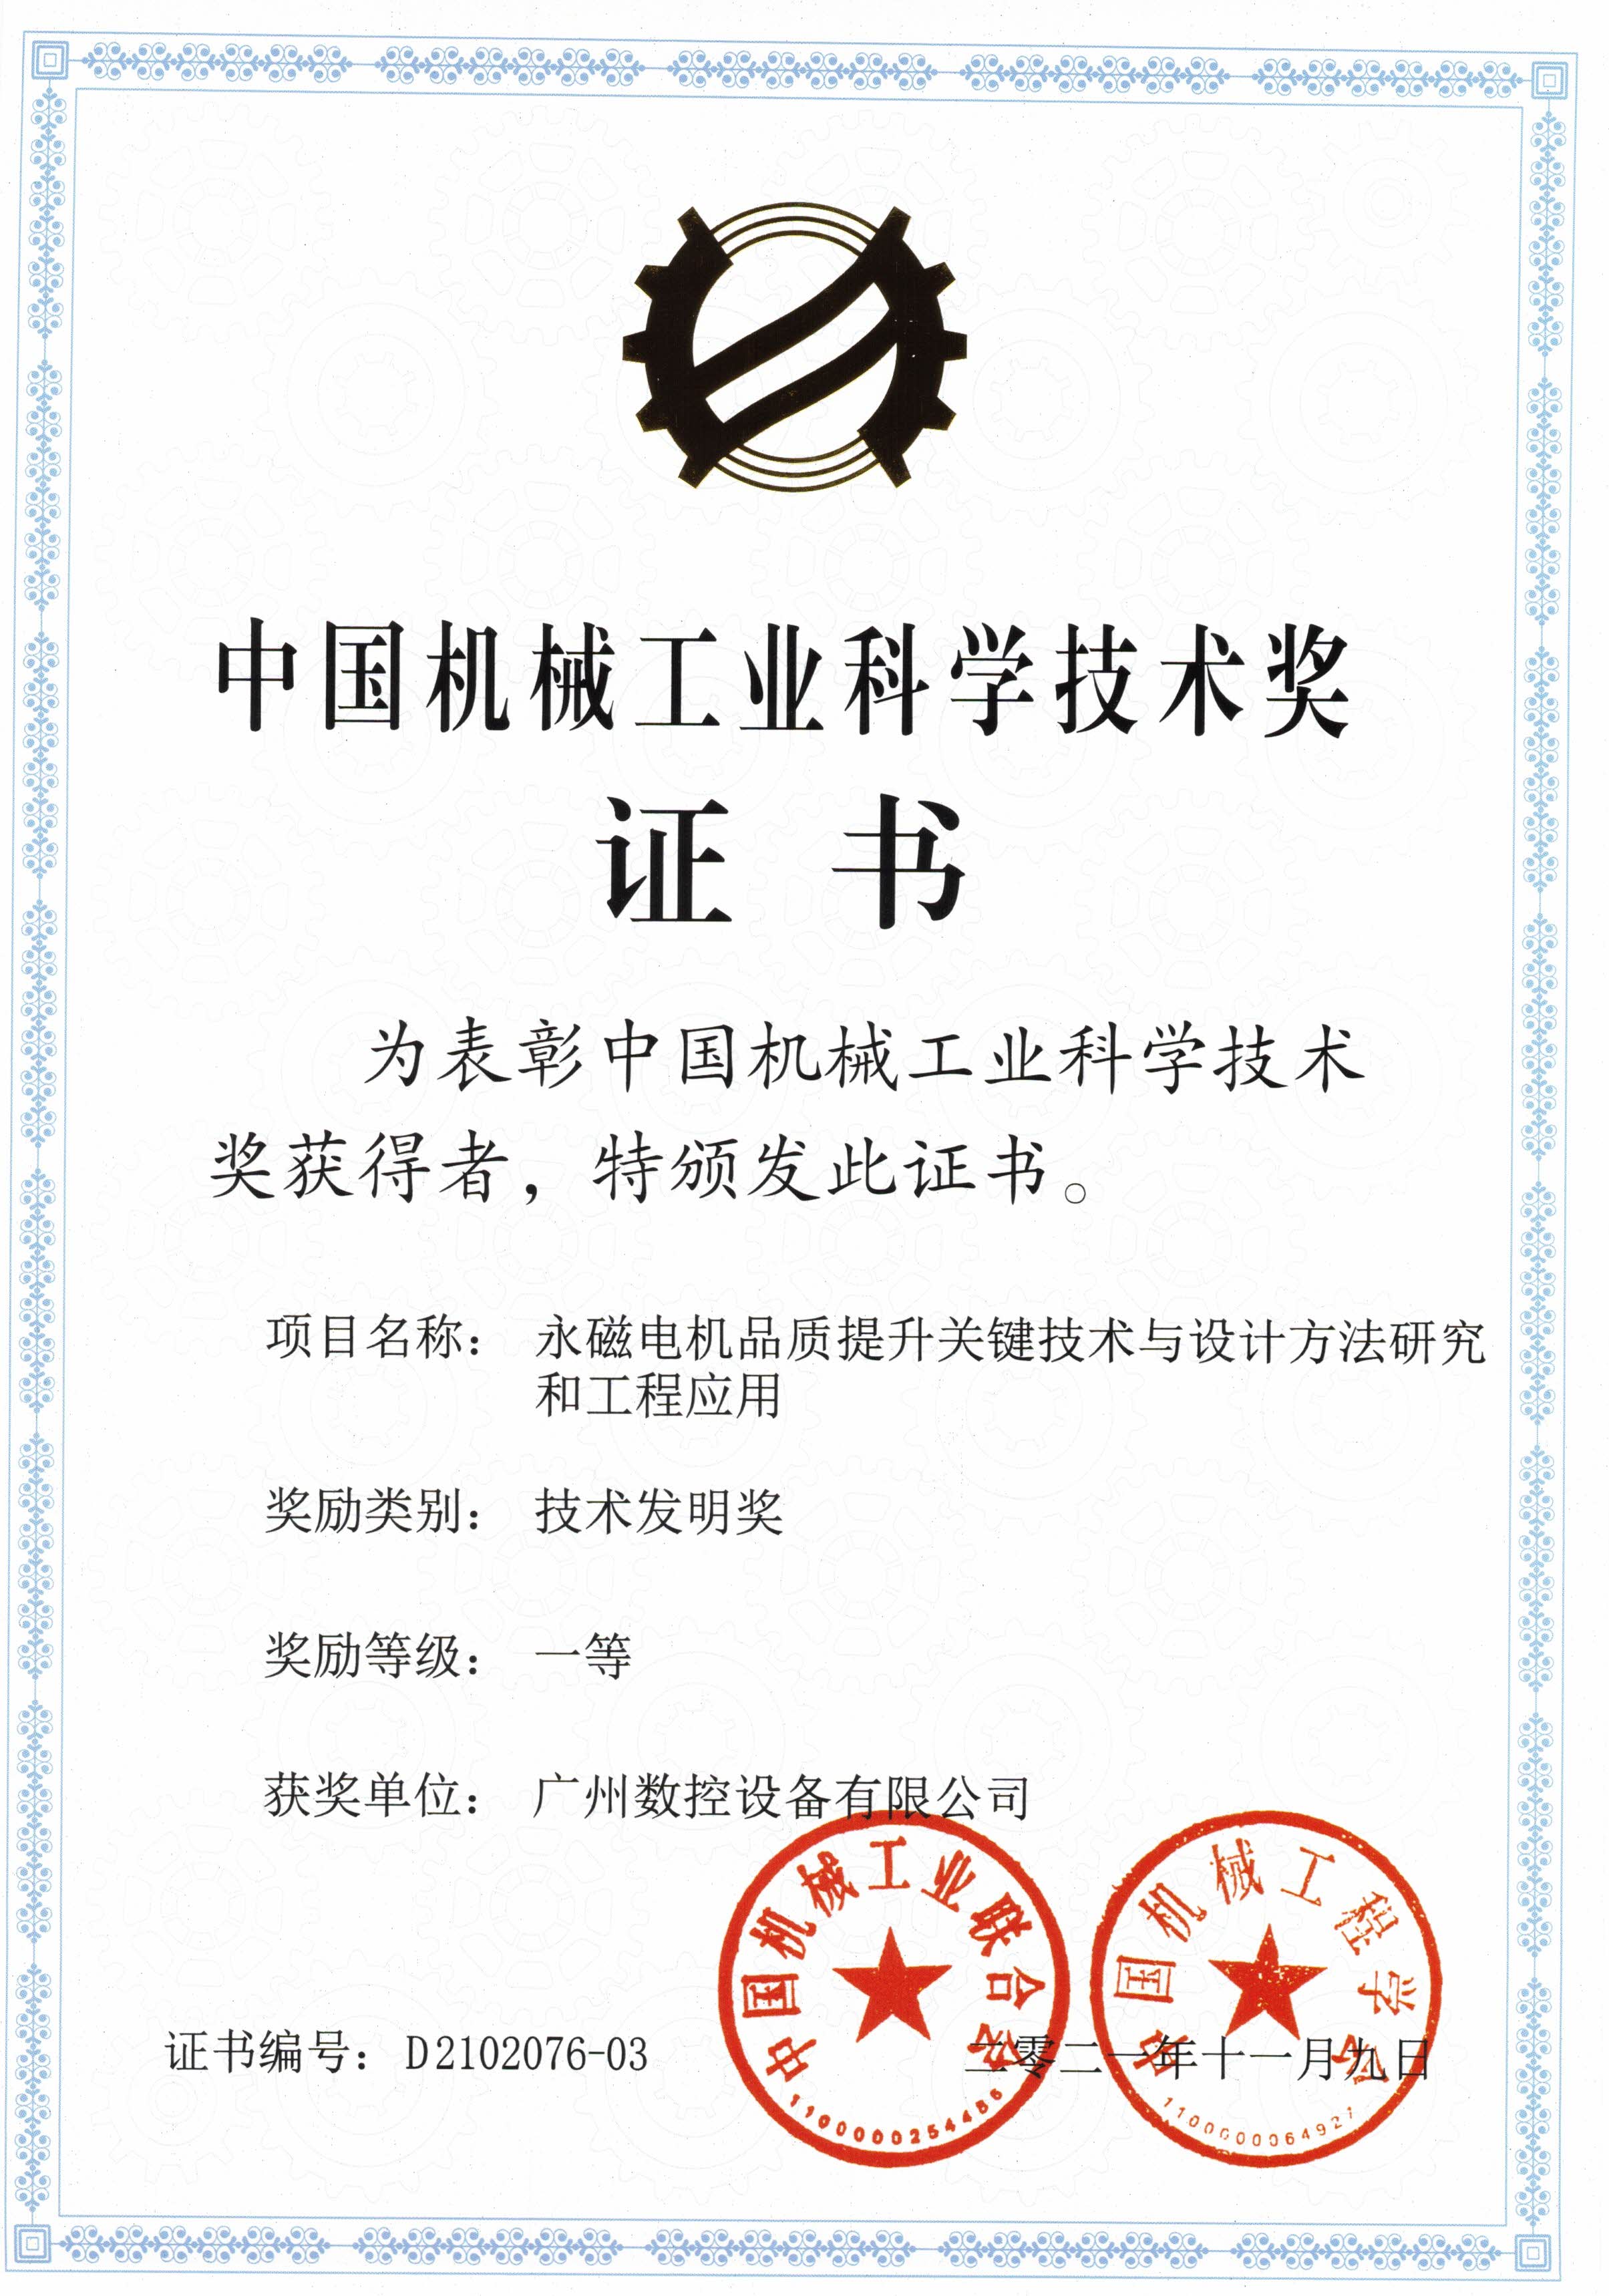 中国机械工业科学技术奖科学进步奖三等奖